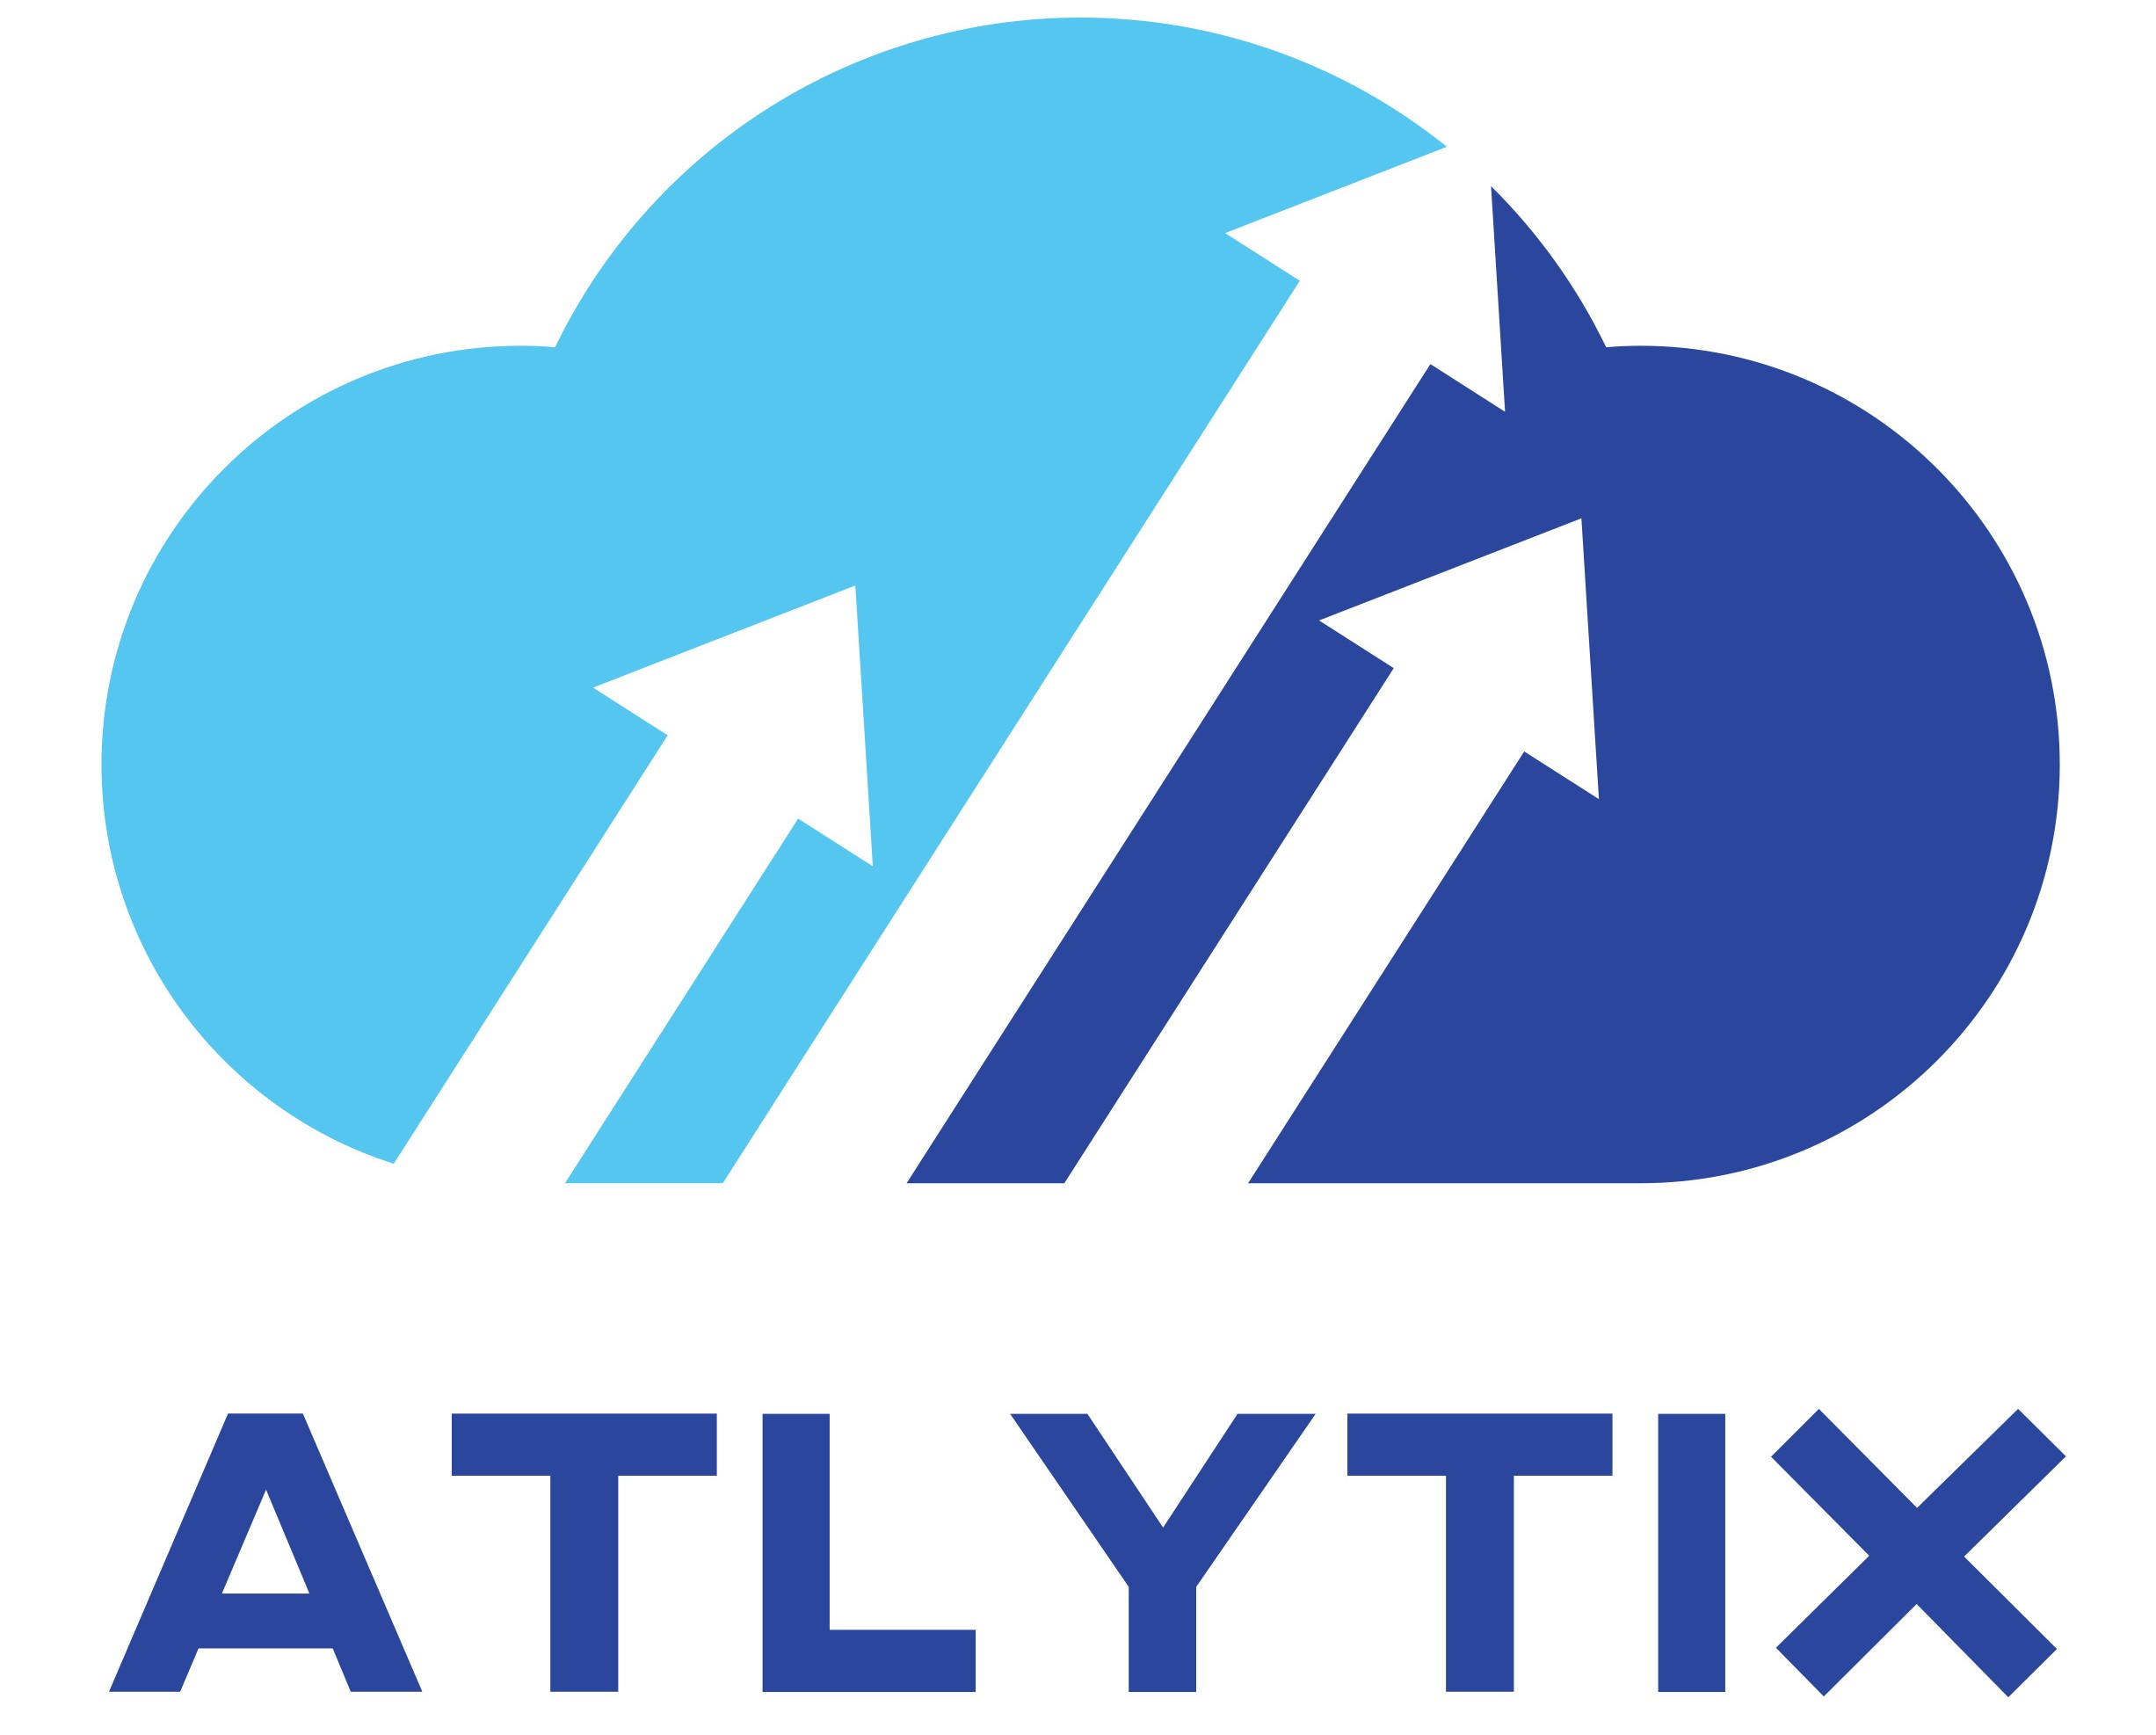 Atlytix